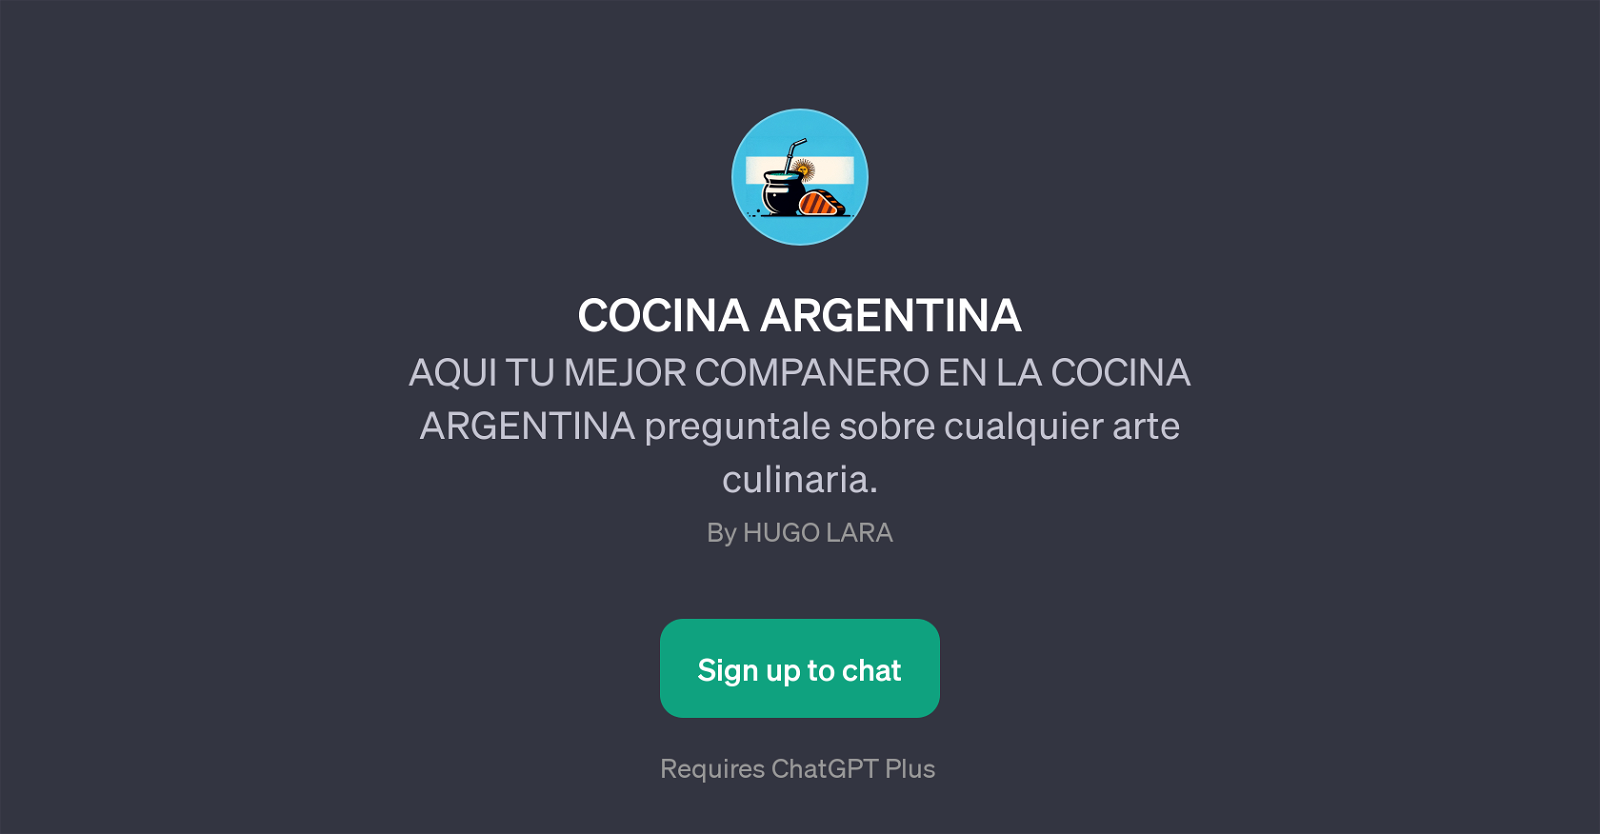 COCINA ARGENTINA website